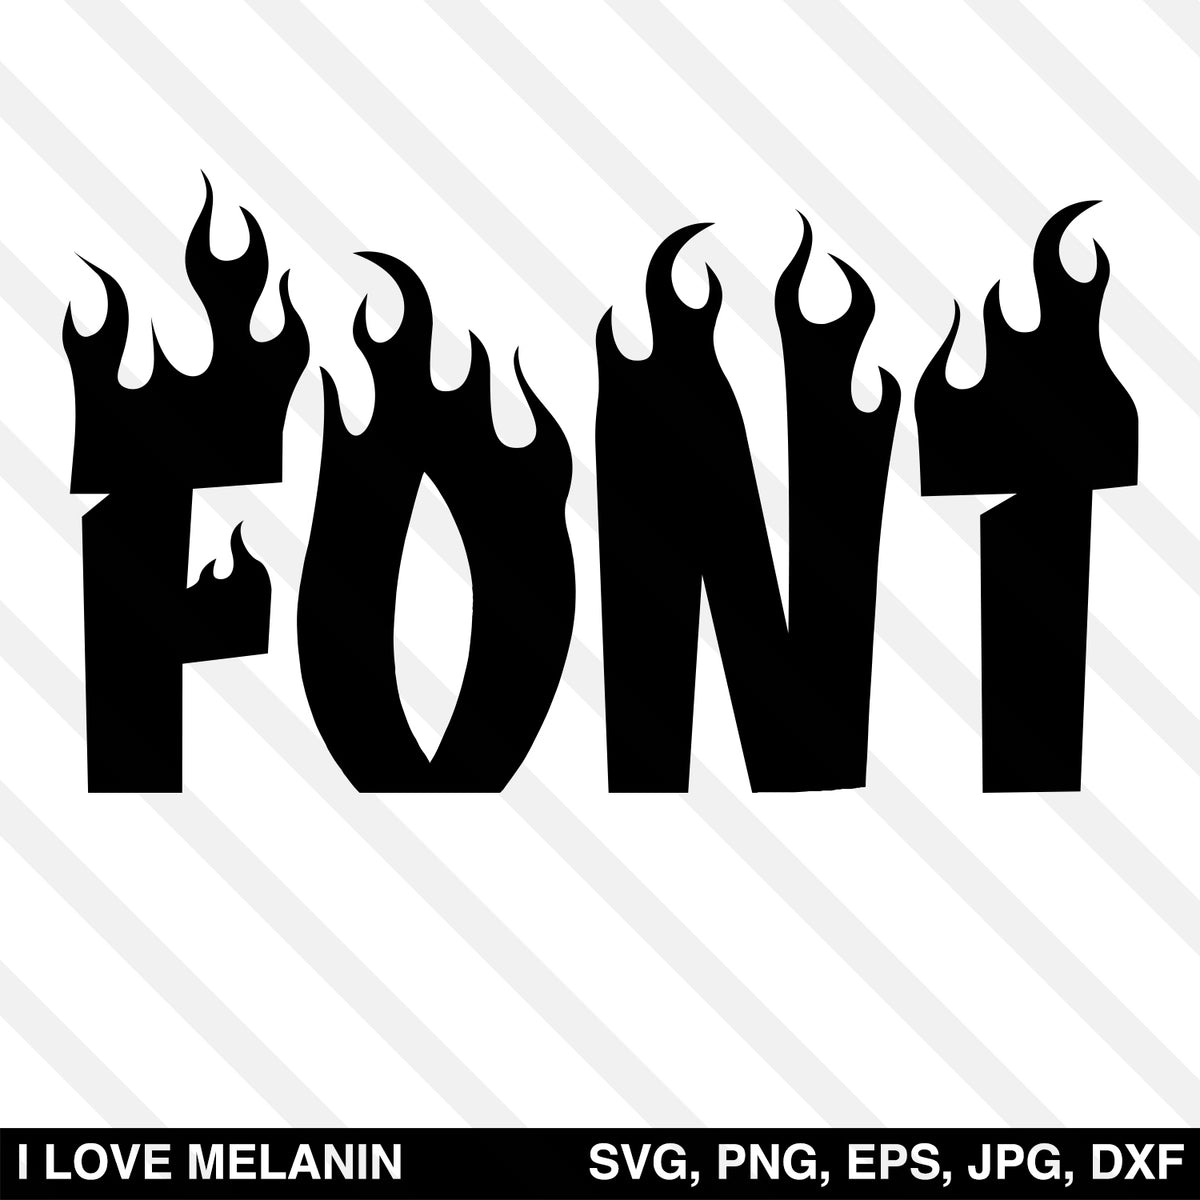 Download Fire Font SVG - I Love Melanin